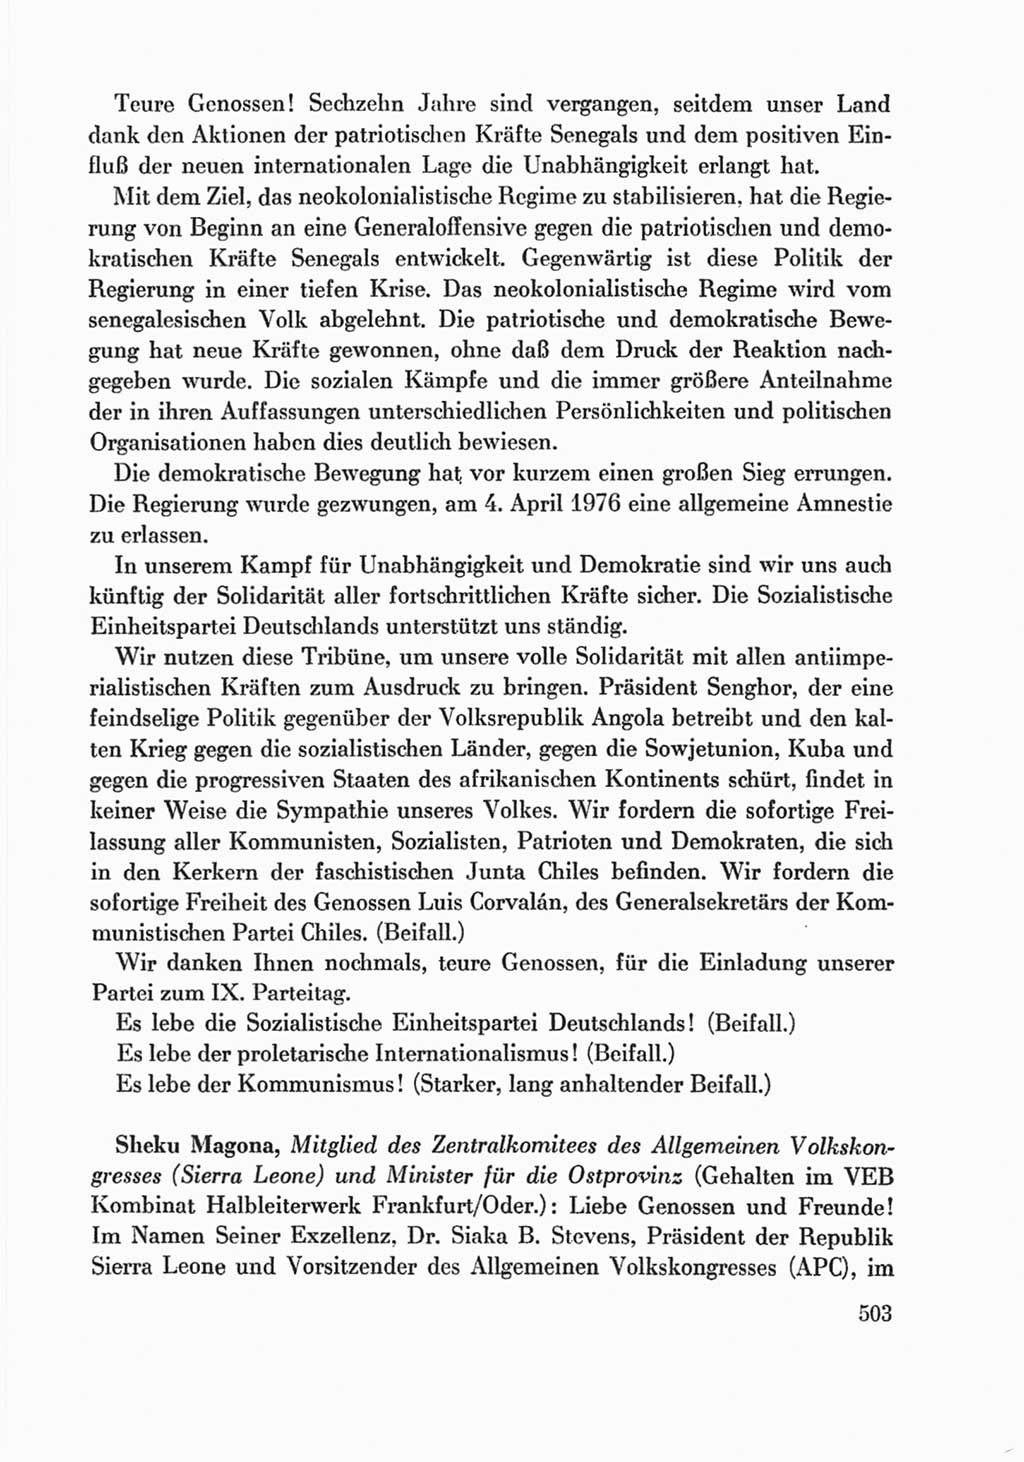 Protokoll der Verhandlungen des Ⅸ. Parteitages der Sozialistischen Einheitspartei Deutschlands (SED) [Deutsche Demokratische Republik (DDR)] 1976, Band 1, Seite 503 (Prot. Verh. Ⅸ. PT SED DDR 1976, Bd. 1, S. 503)